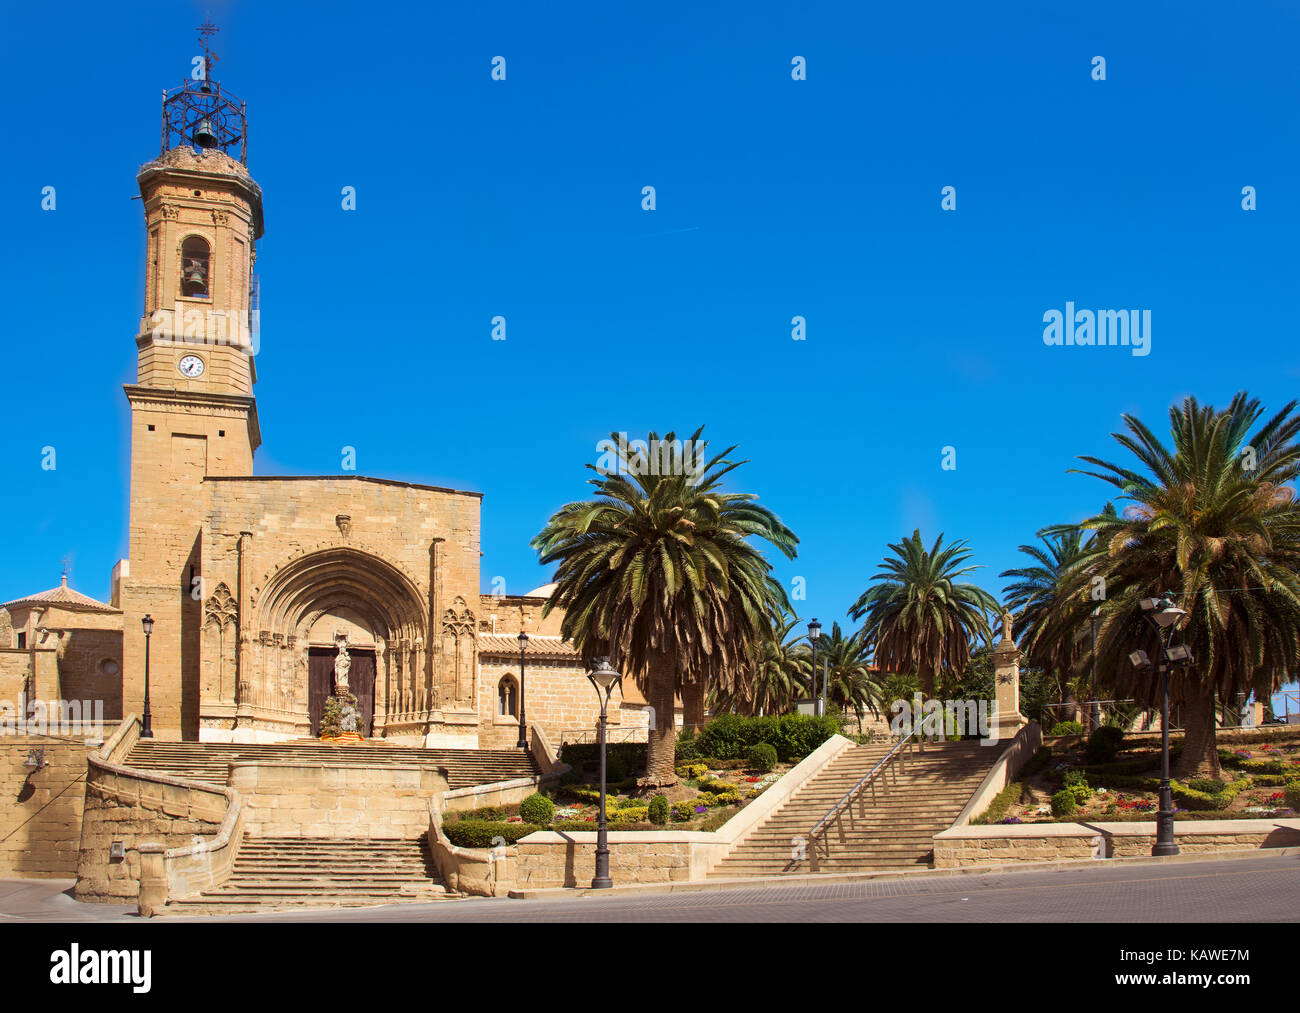 a view of the facade of the Colegiata de Santa Maria la Mayor in Caspe, Spain Stock Photo